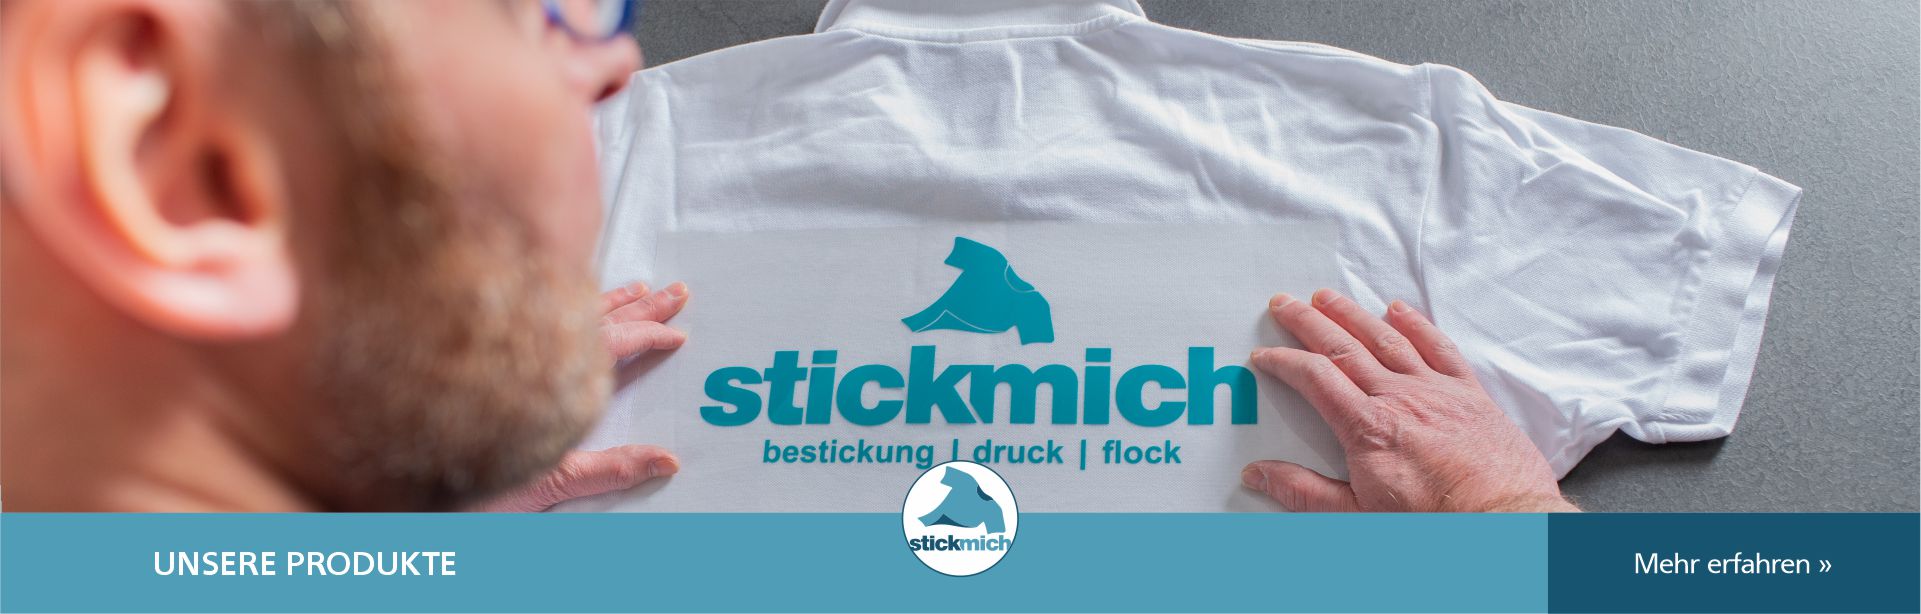 stickmich_slider_home_003